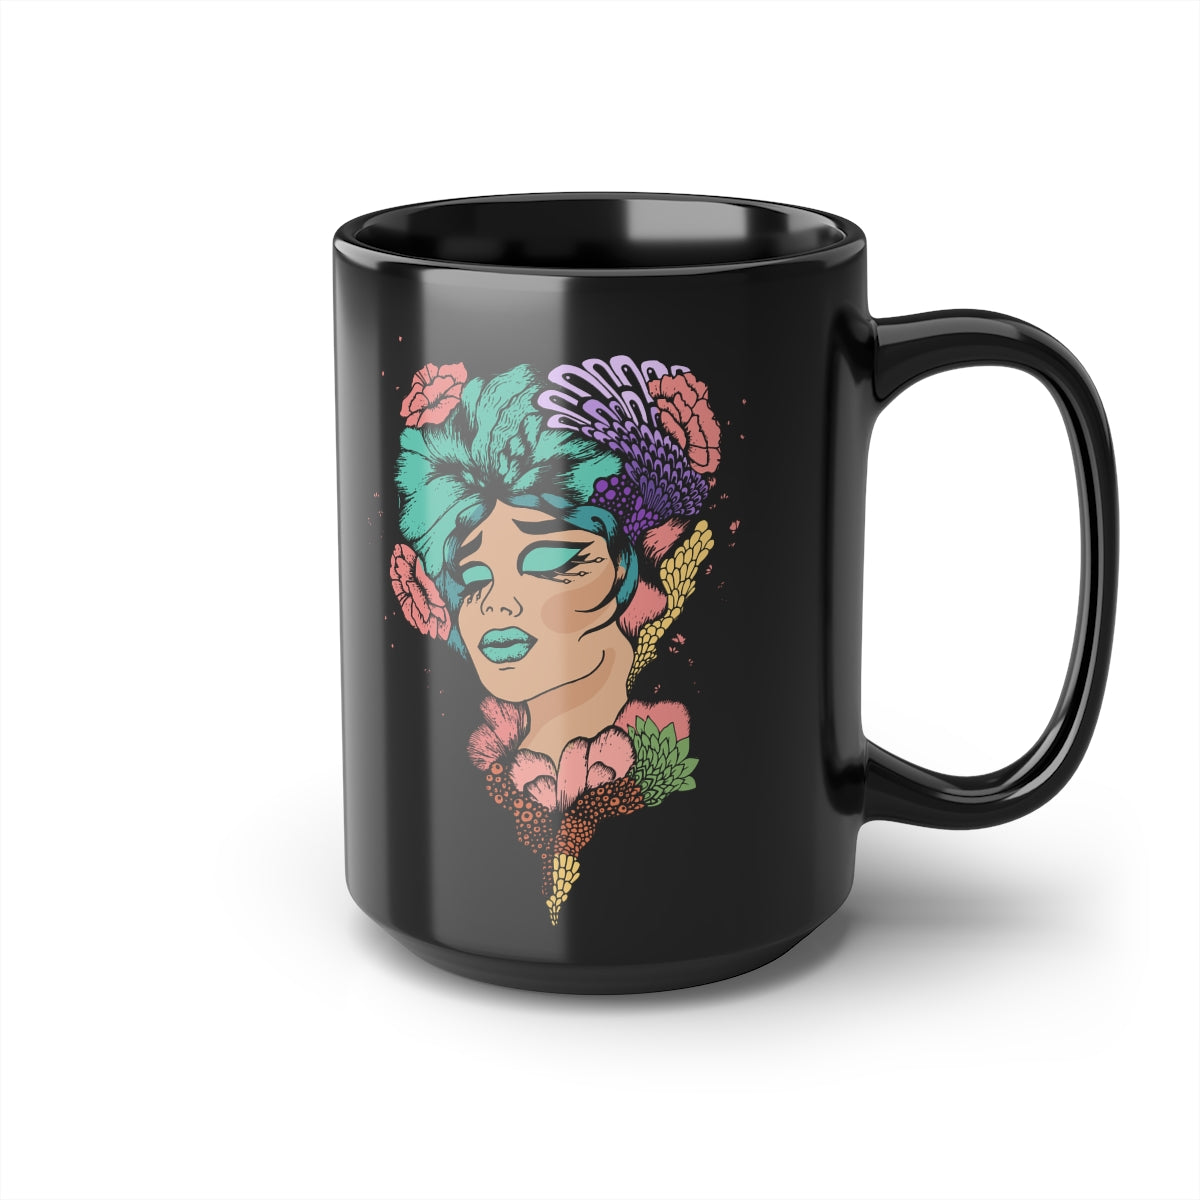 Black Coffee Mug, 15oz, Floral Woman Black Coffee Mug